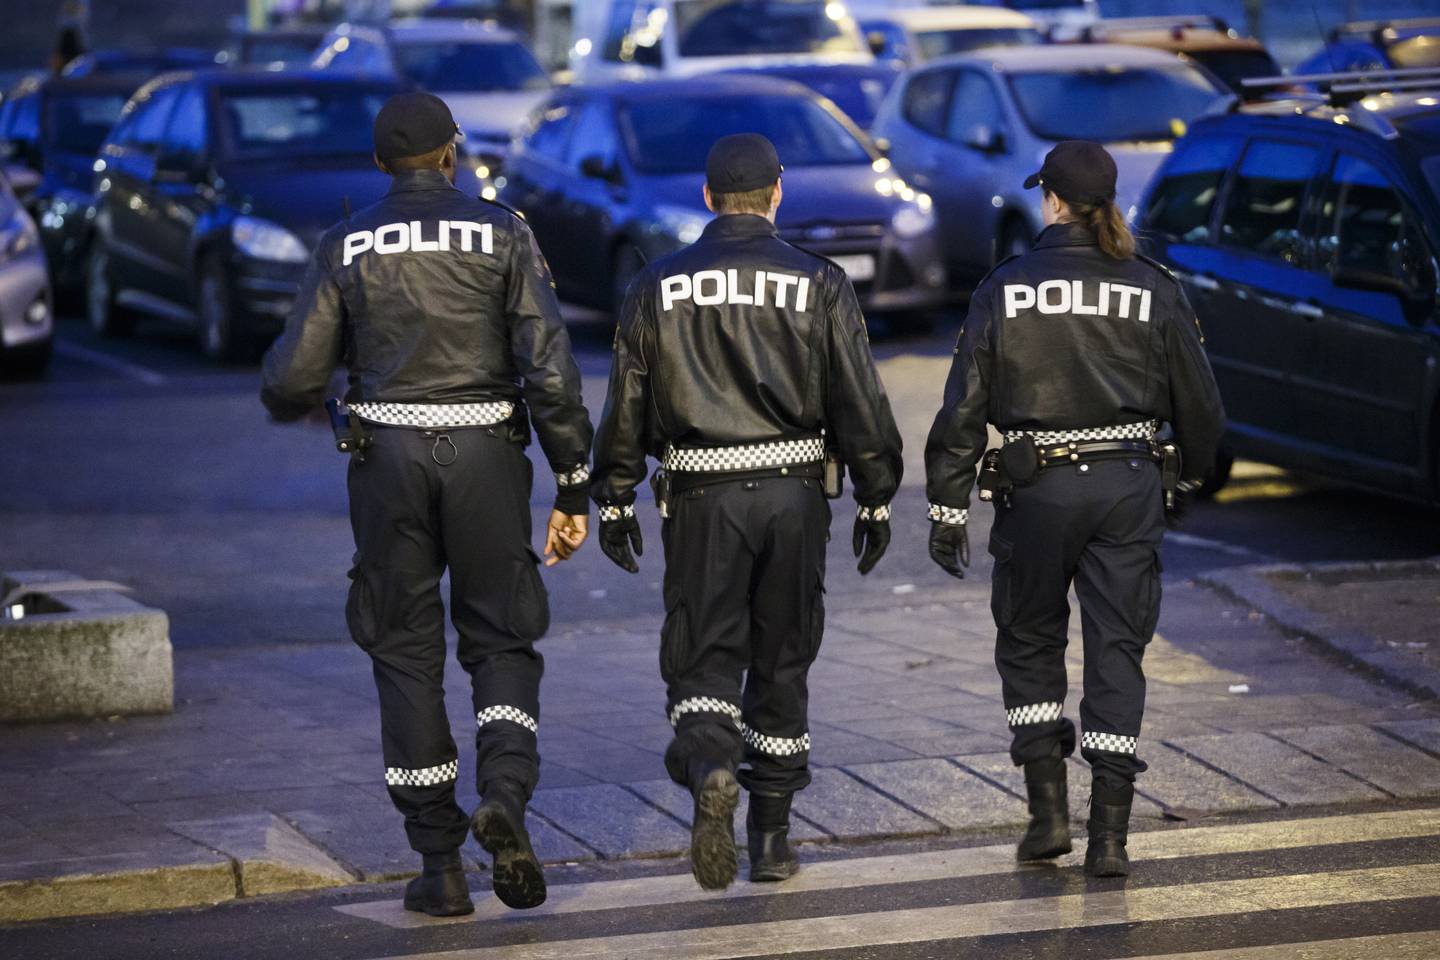 SKI  20161213.
Politiet i arbeid. Tre politifolk patruljerer gatene i Ski. NB! Modellklarert til redaksjonell bruk. 
Foto: Heiko Junge / NTB